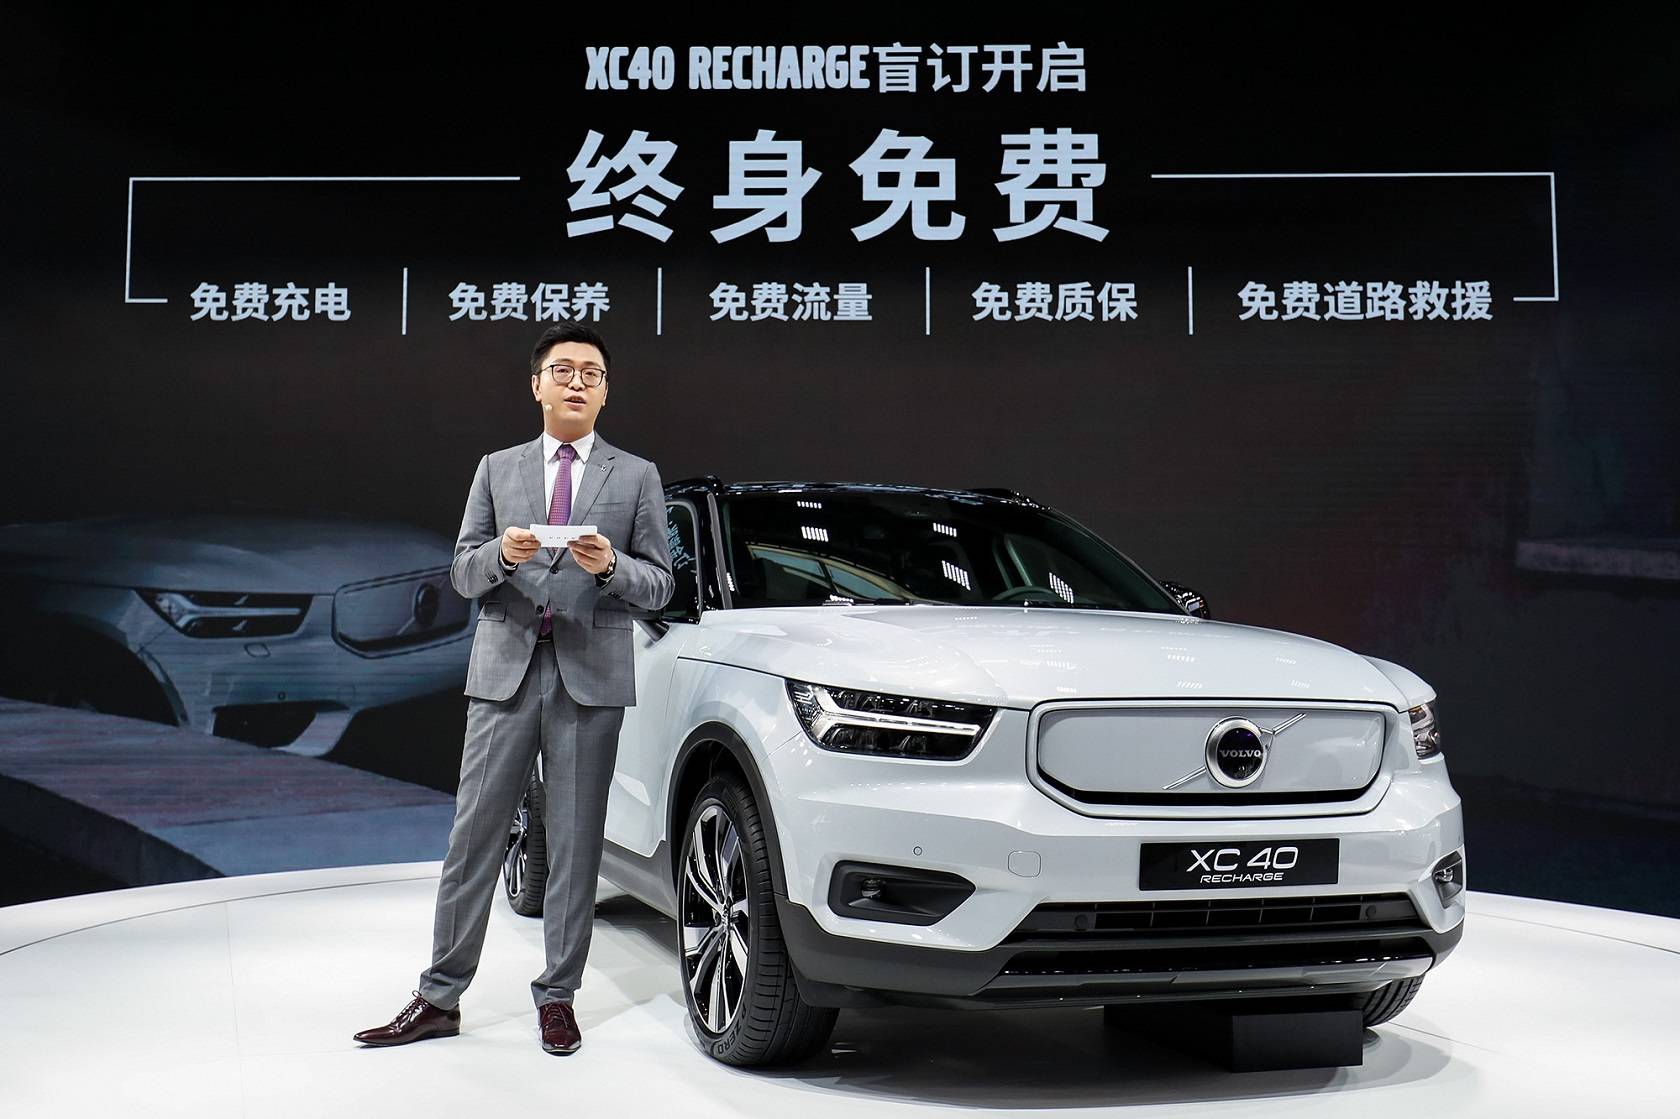 04_沃尔沃汽车大中华区销售公司总裁钦培吉宣布XC40 RECHARGE官方直售并开启盲订.jpg